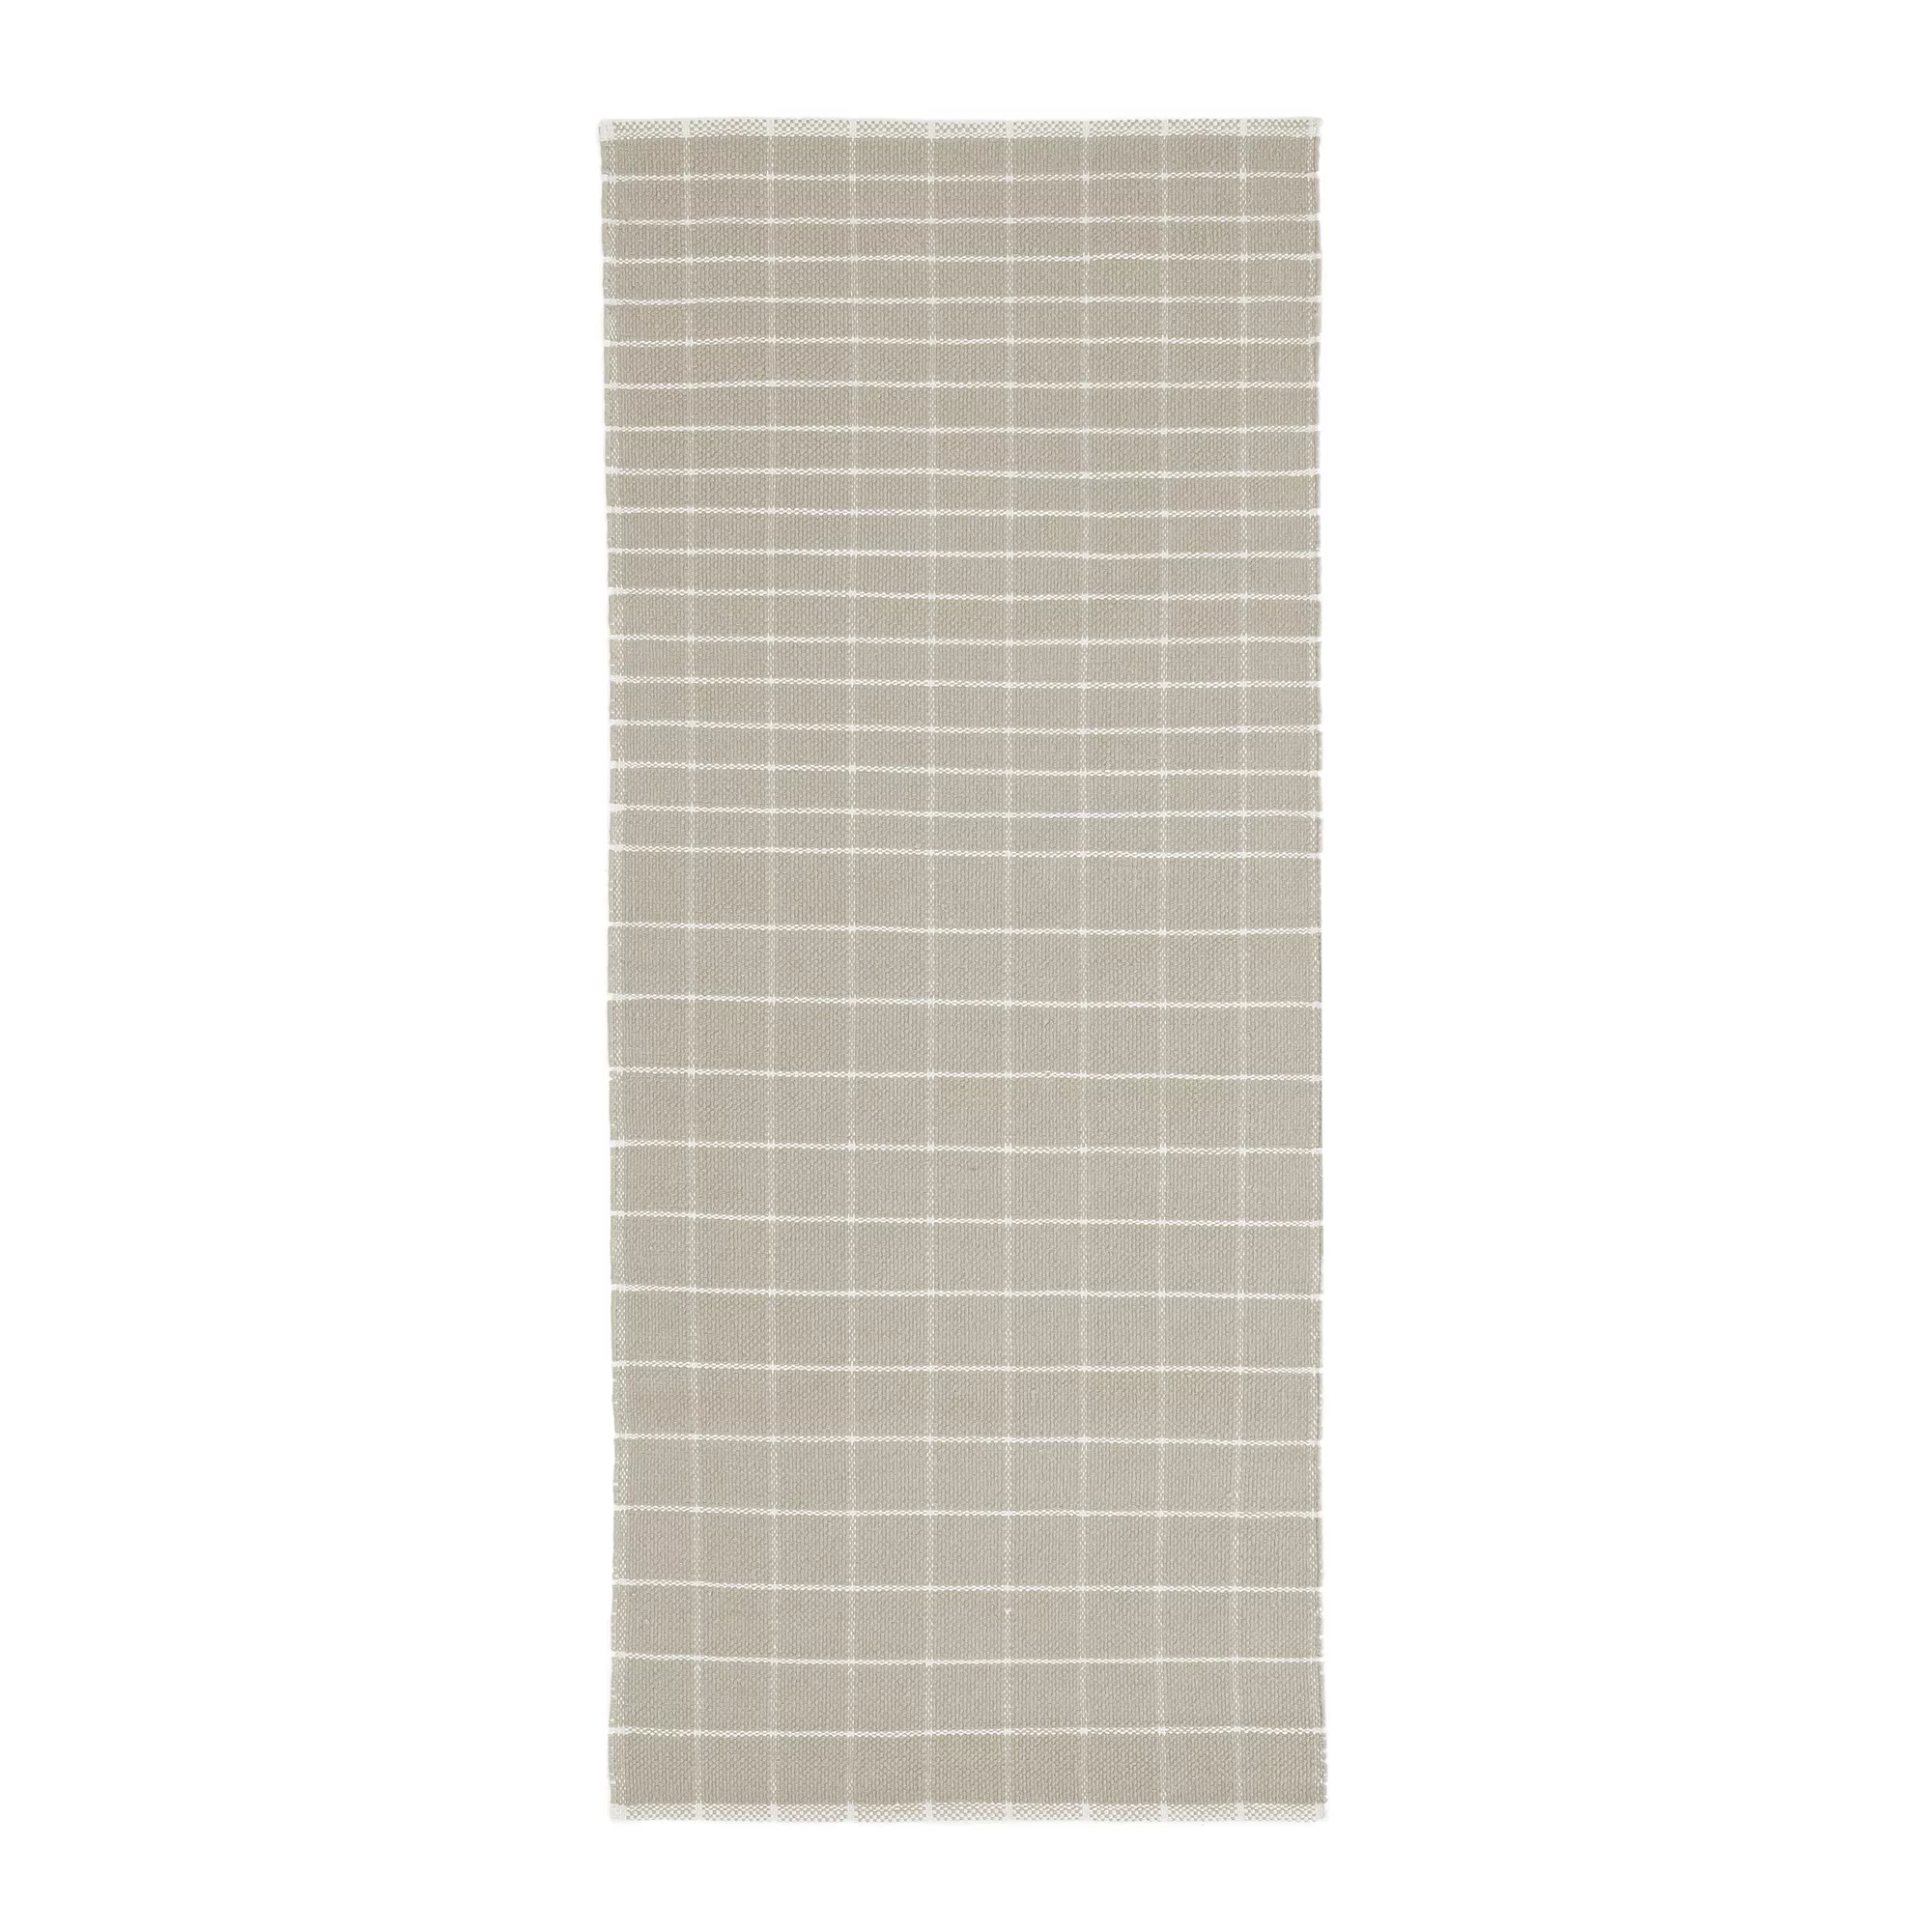 Nanimarquina - Tiles 1 Teppichläufer 80x160cm - grau/handgewebt/Ausführung günstig online kaufen